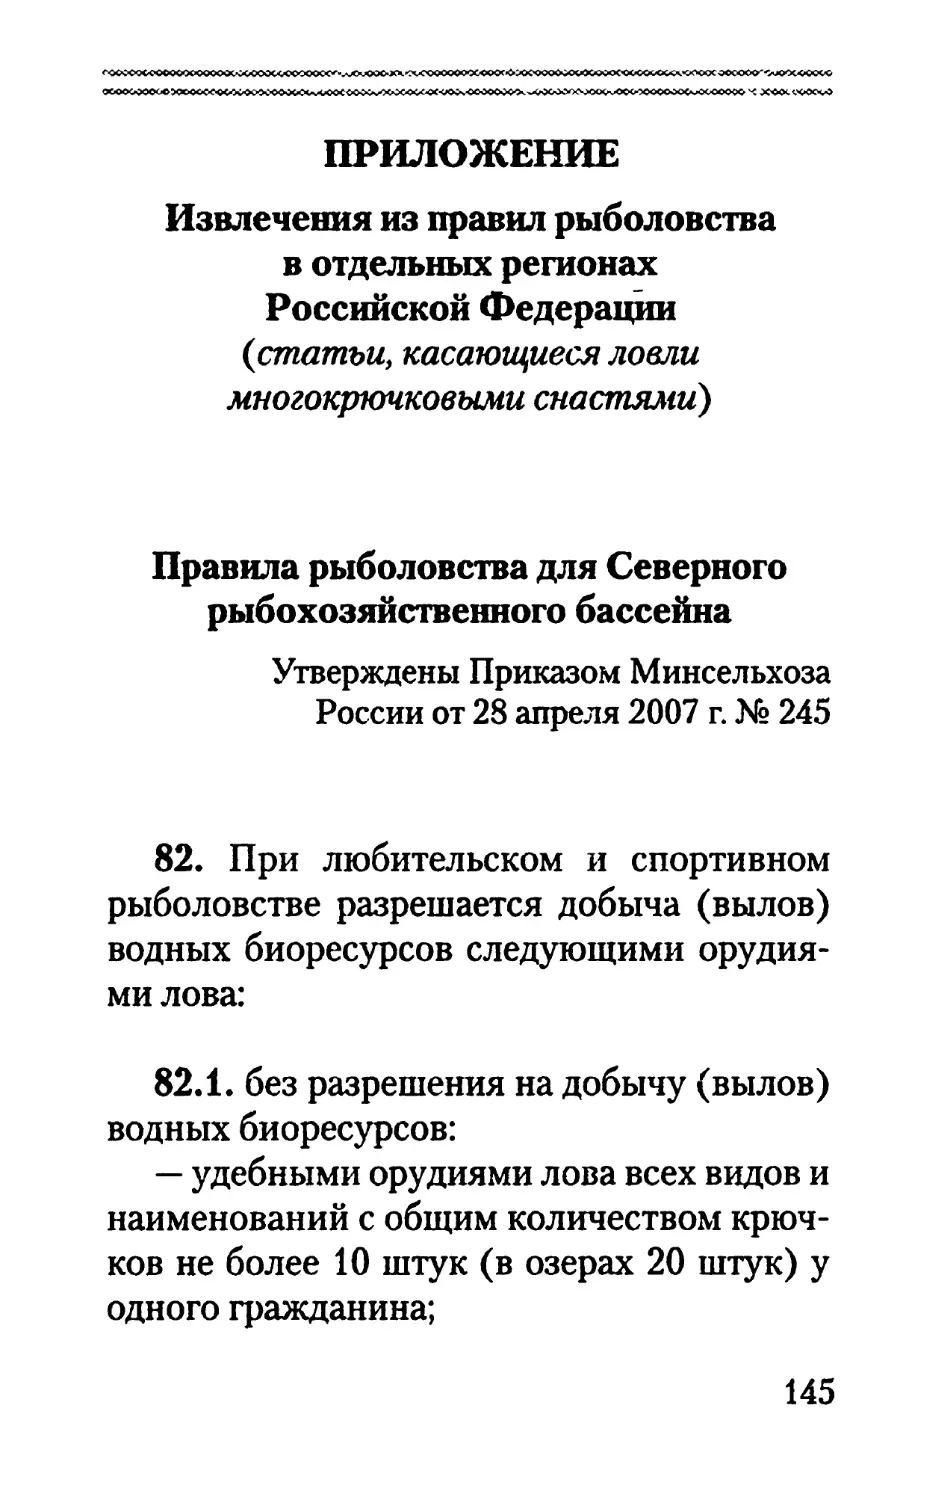 Извлечения из правил рыболовства в отдельных регионах Российской Федерации (статьи, касающиеся ловли описанными в книге снастями)